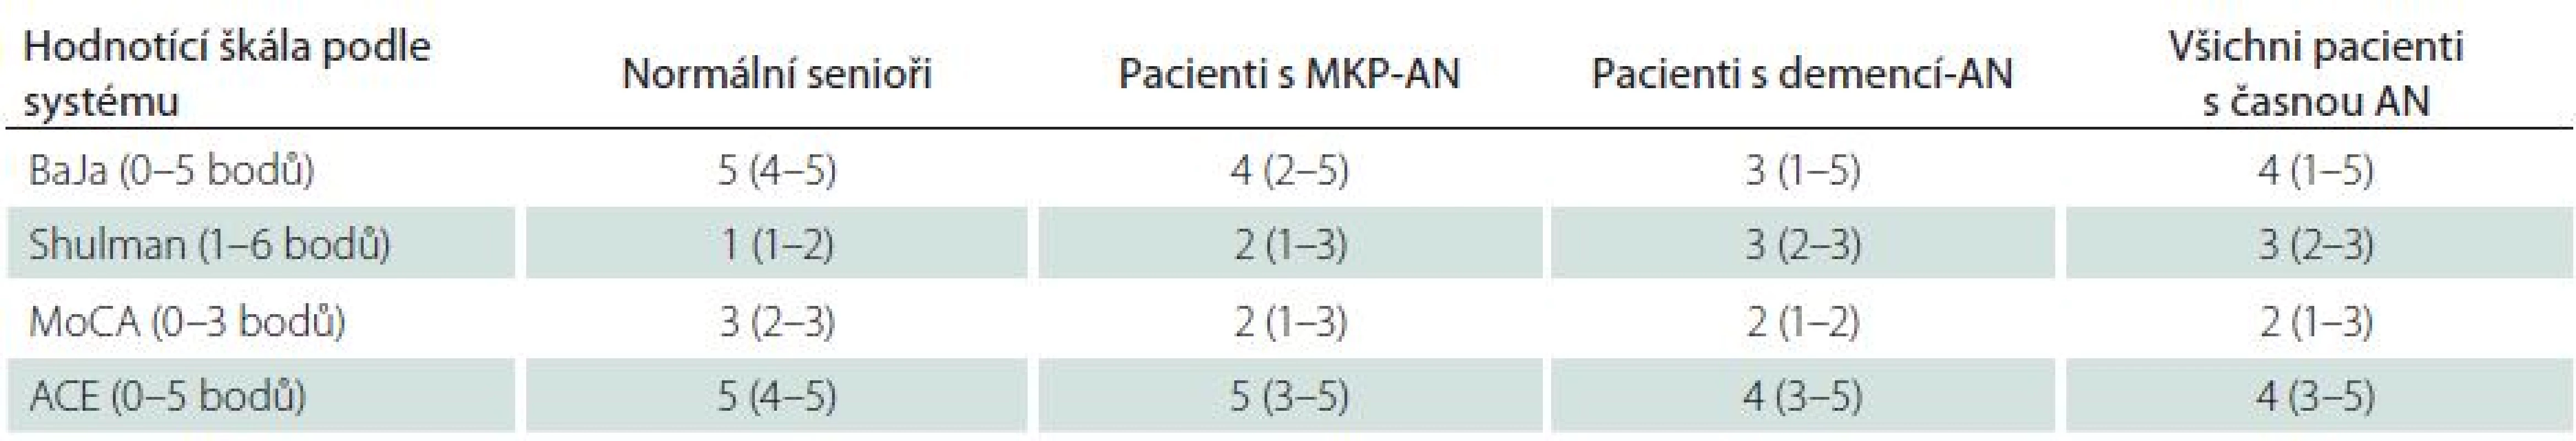 Skóry pro tři časy TKH hodnocené různými škálami u normálních seniorů a pacientů s časnou AN.
Rozdíl všech skórů mezi oběma skupinami je statisticky významný na hladině p < 0,01.